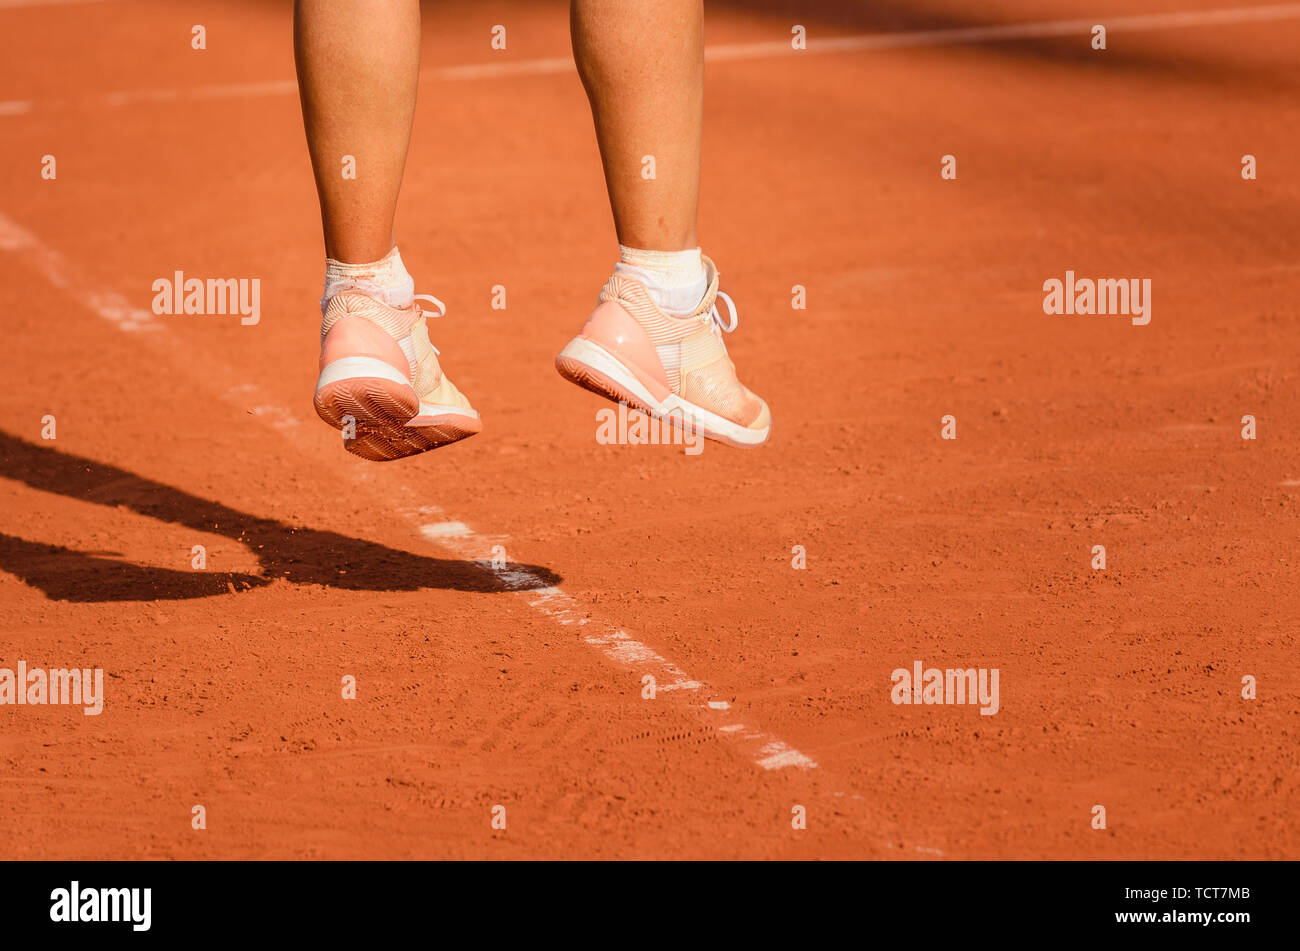 Pieds d'un joueur de tennis féminin dans les sauts après avoir tourné, le service Banque D'Images